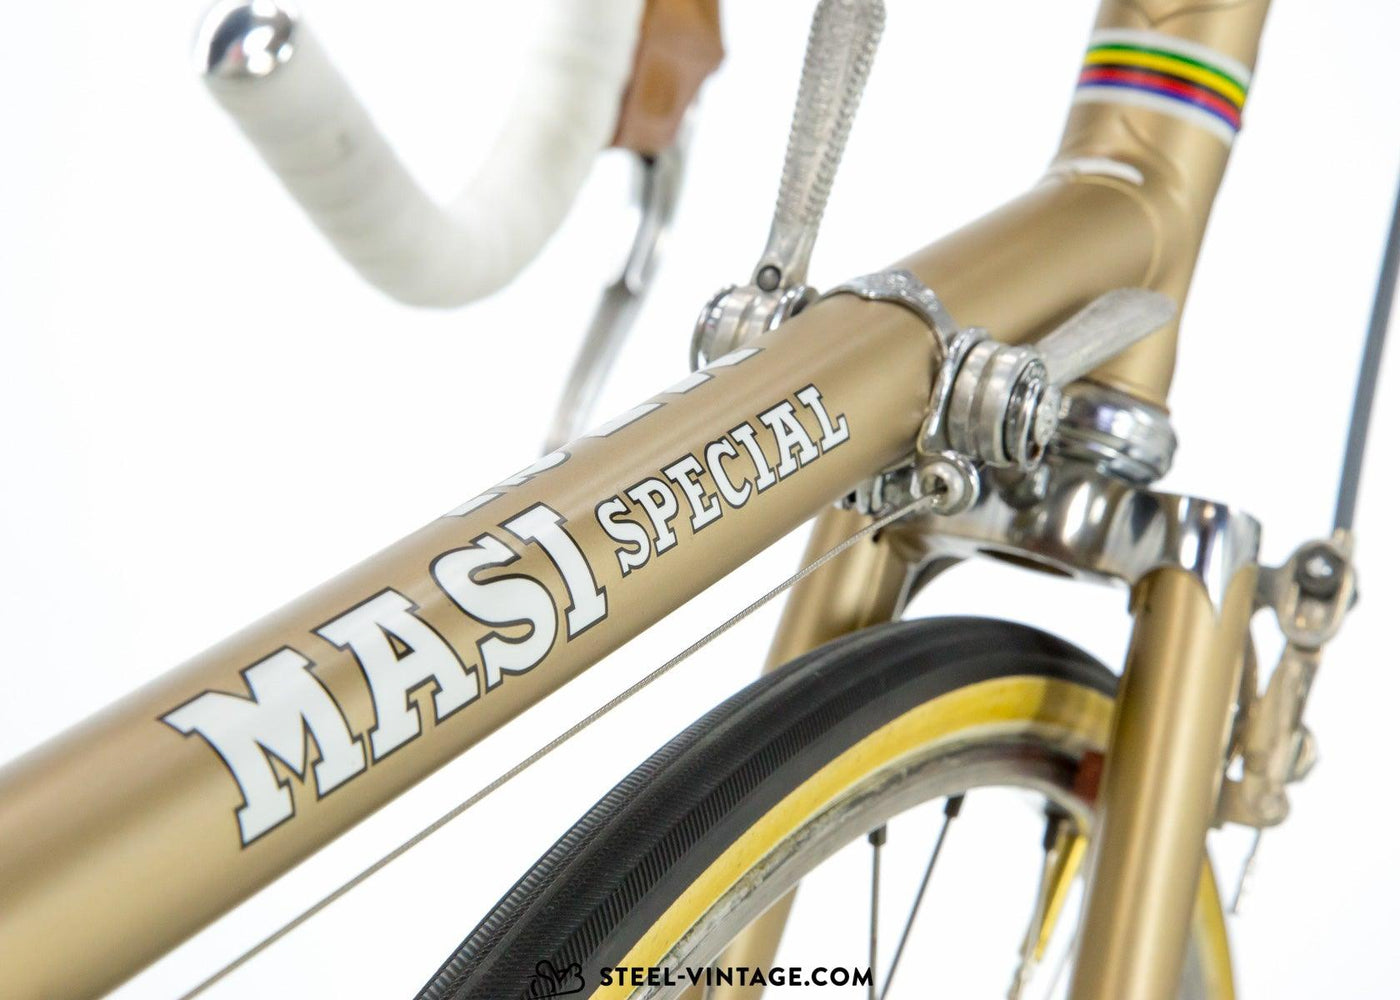 Masi Special Superb Road Bike 1968 - Steel Vintage Bikes